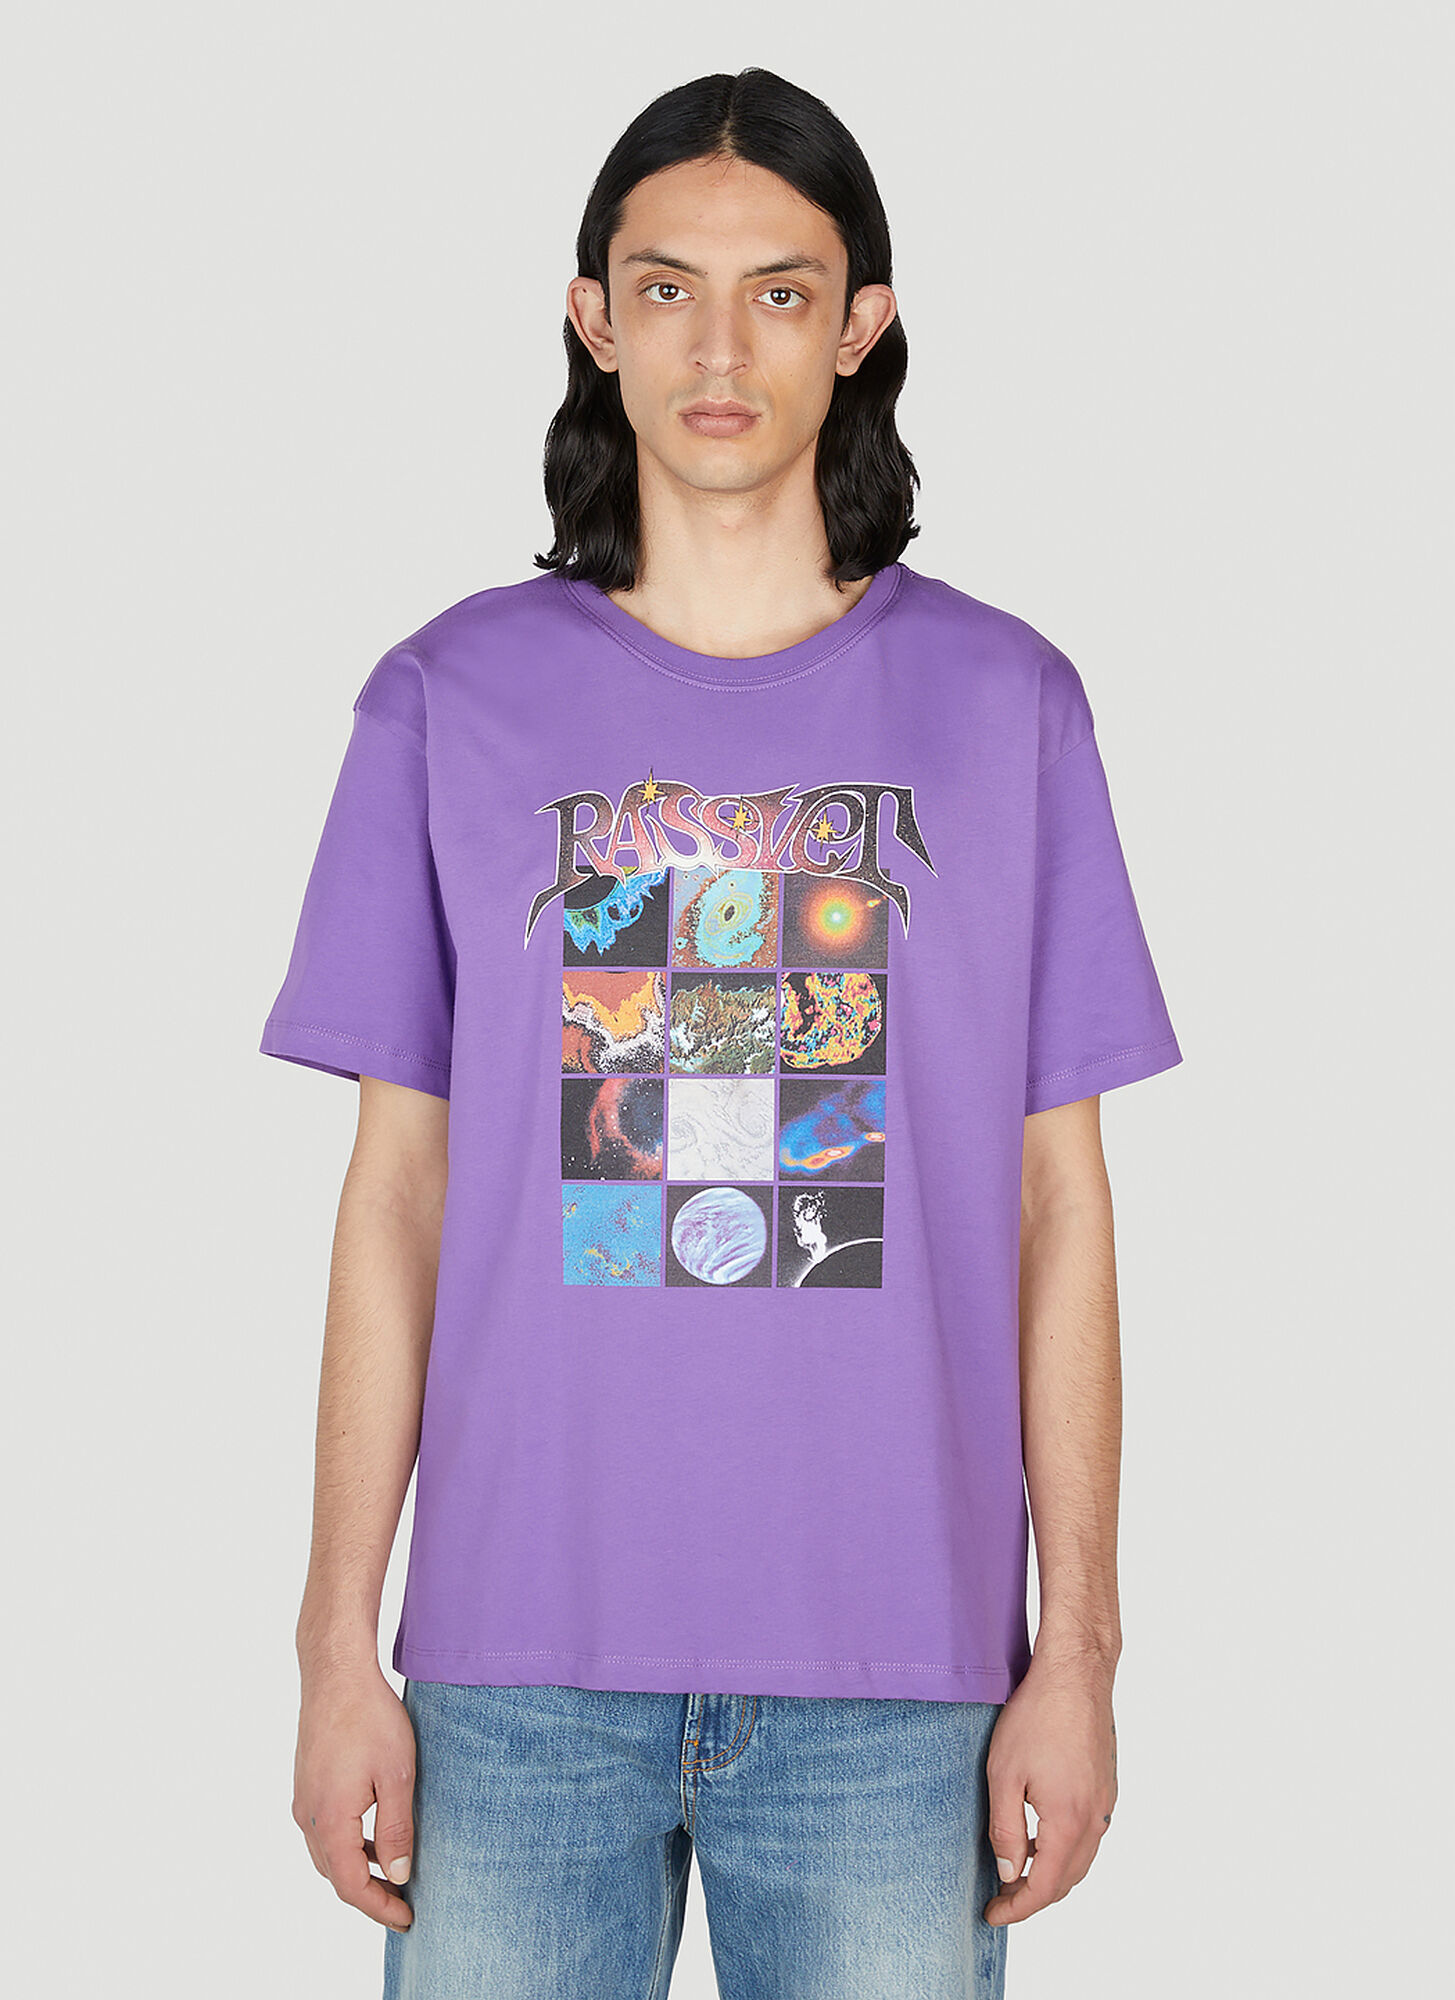 Shop Rassvet Space T-shirt